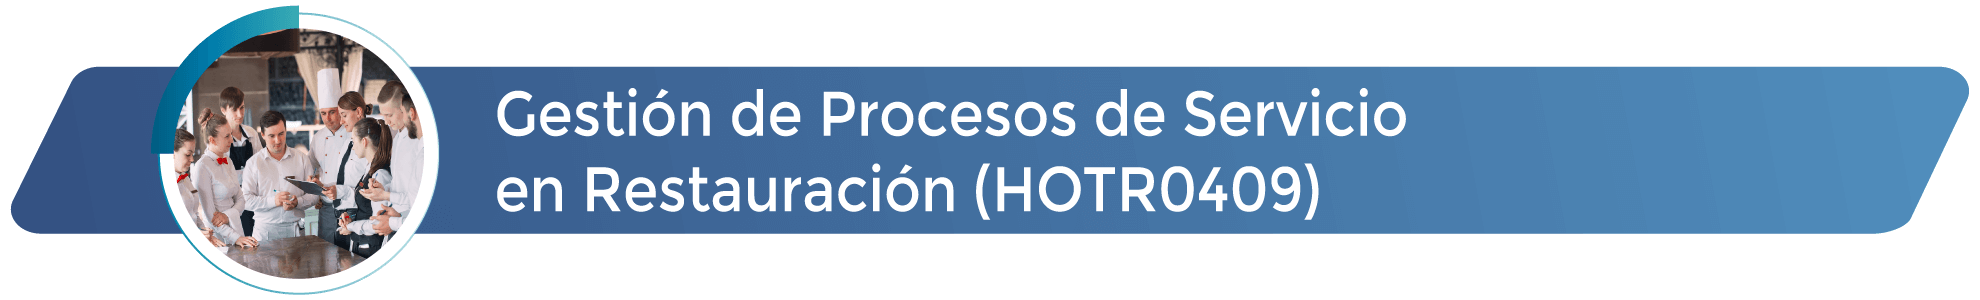 HOTR0409 - Gestión de procesos de servicio en restauración